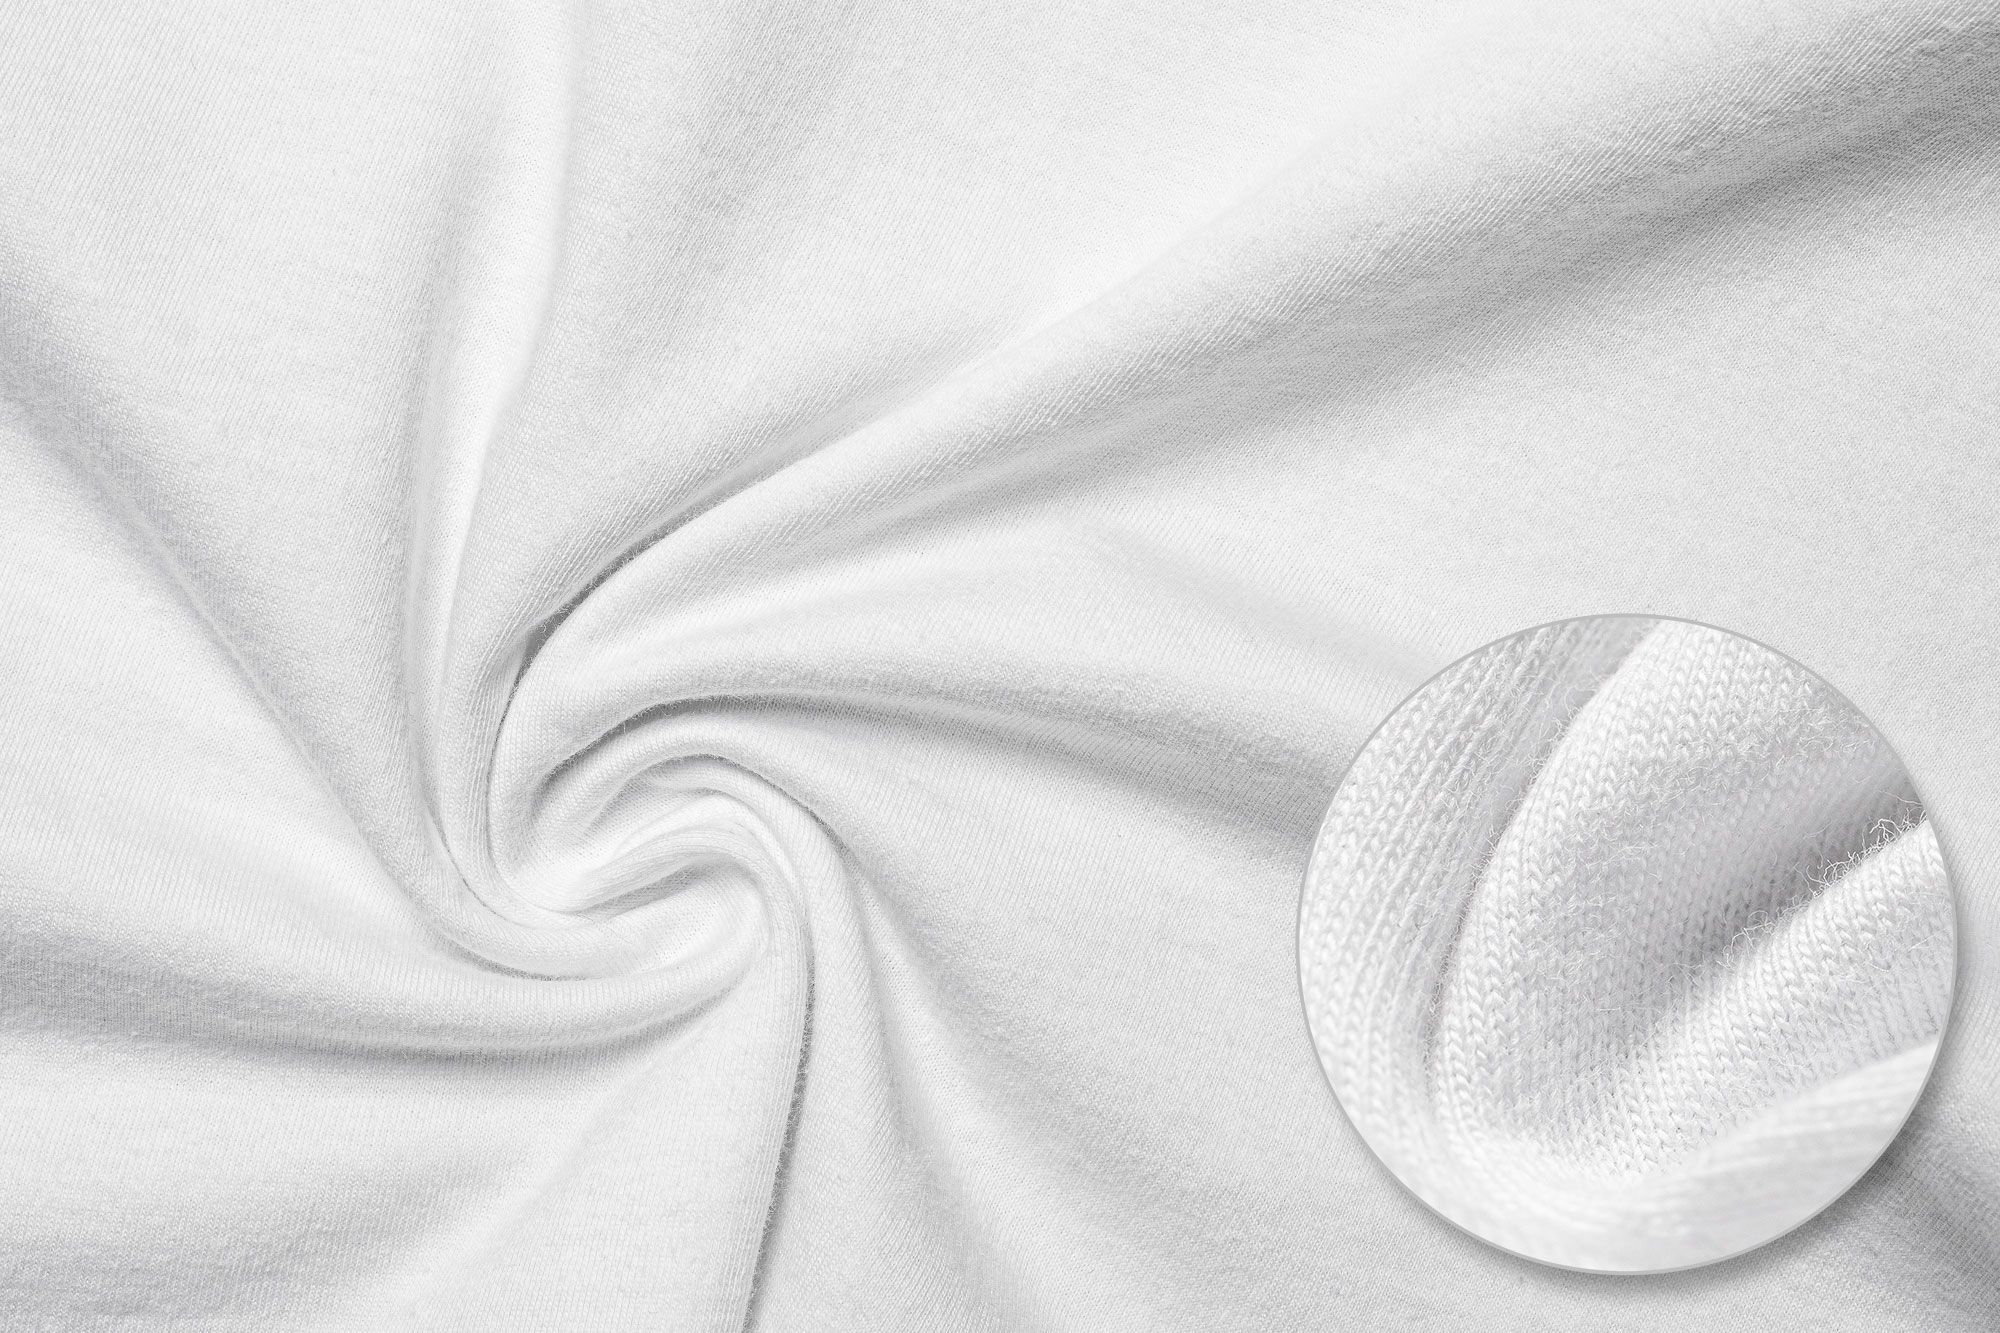 A detail image of ring-spun cotton.